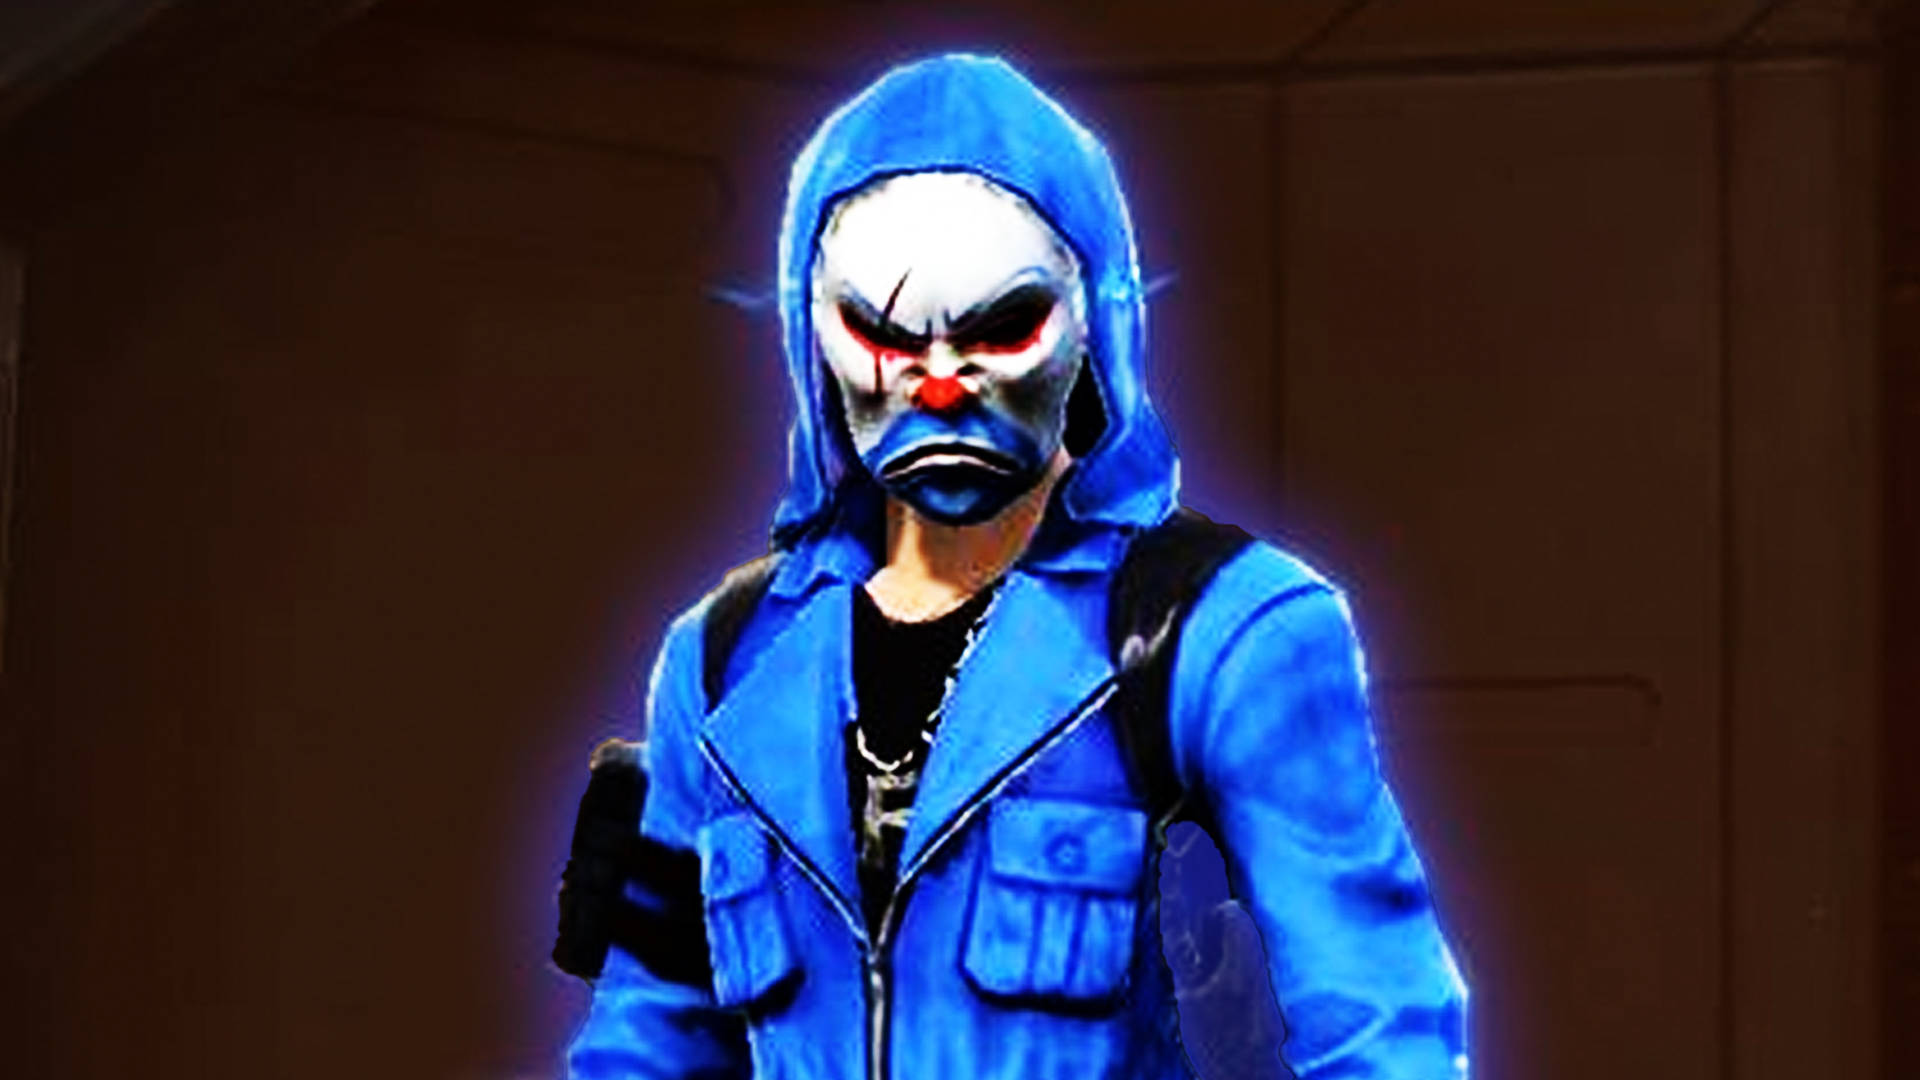 Glowing Blue Criminal Bundle Character Desktop Background